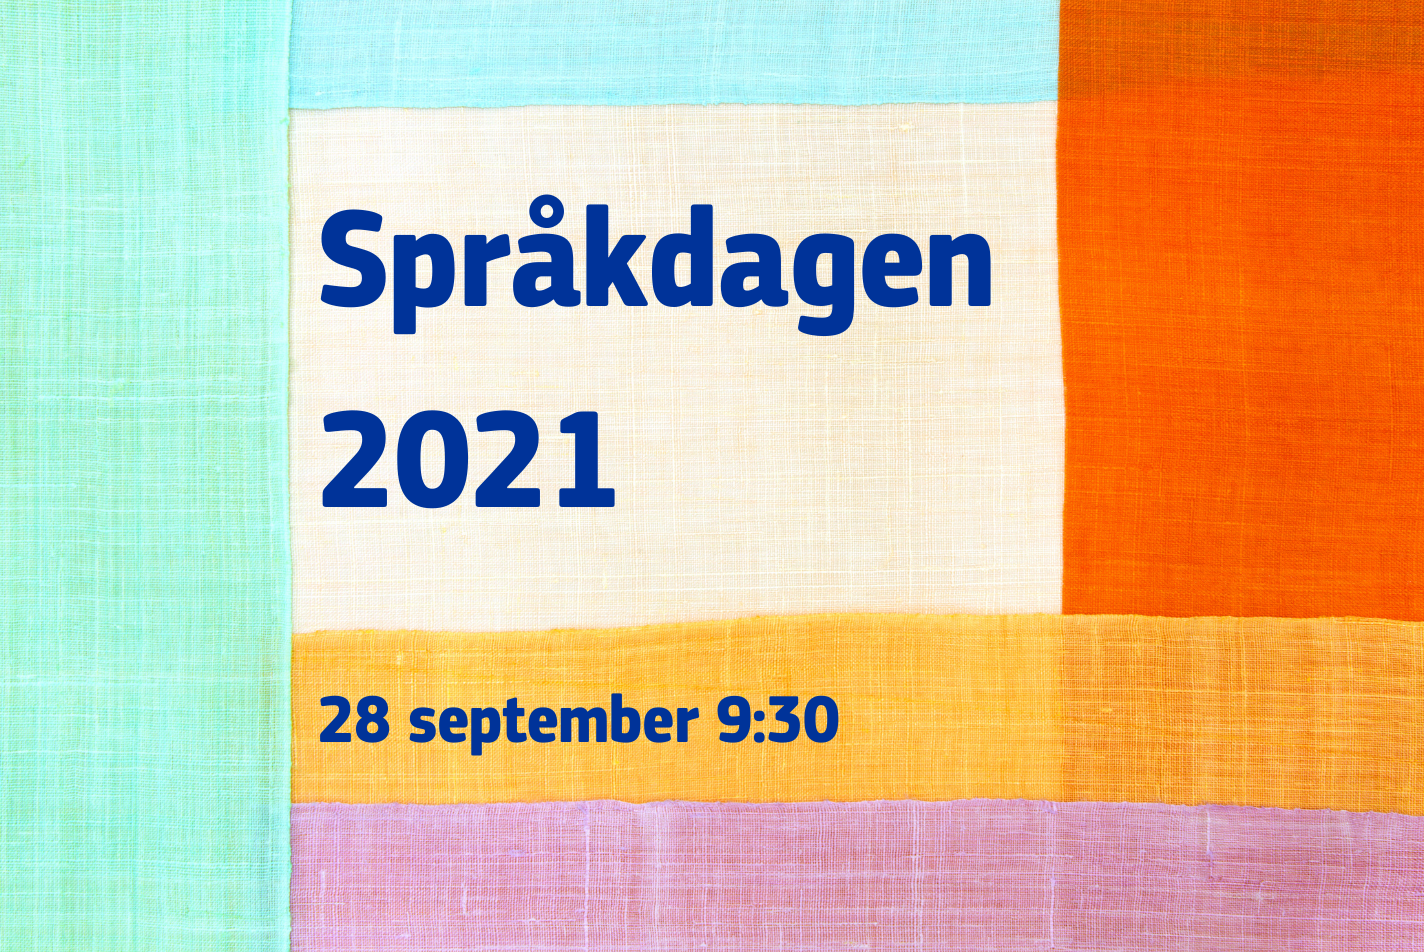 Språkdagen 2021 i blå text på ett foto av tyger i ljust grönt, blått, orange, rött, gult och rosa som ligger omlott.